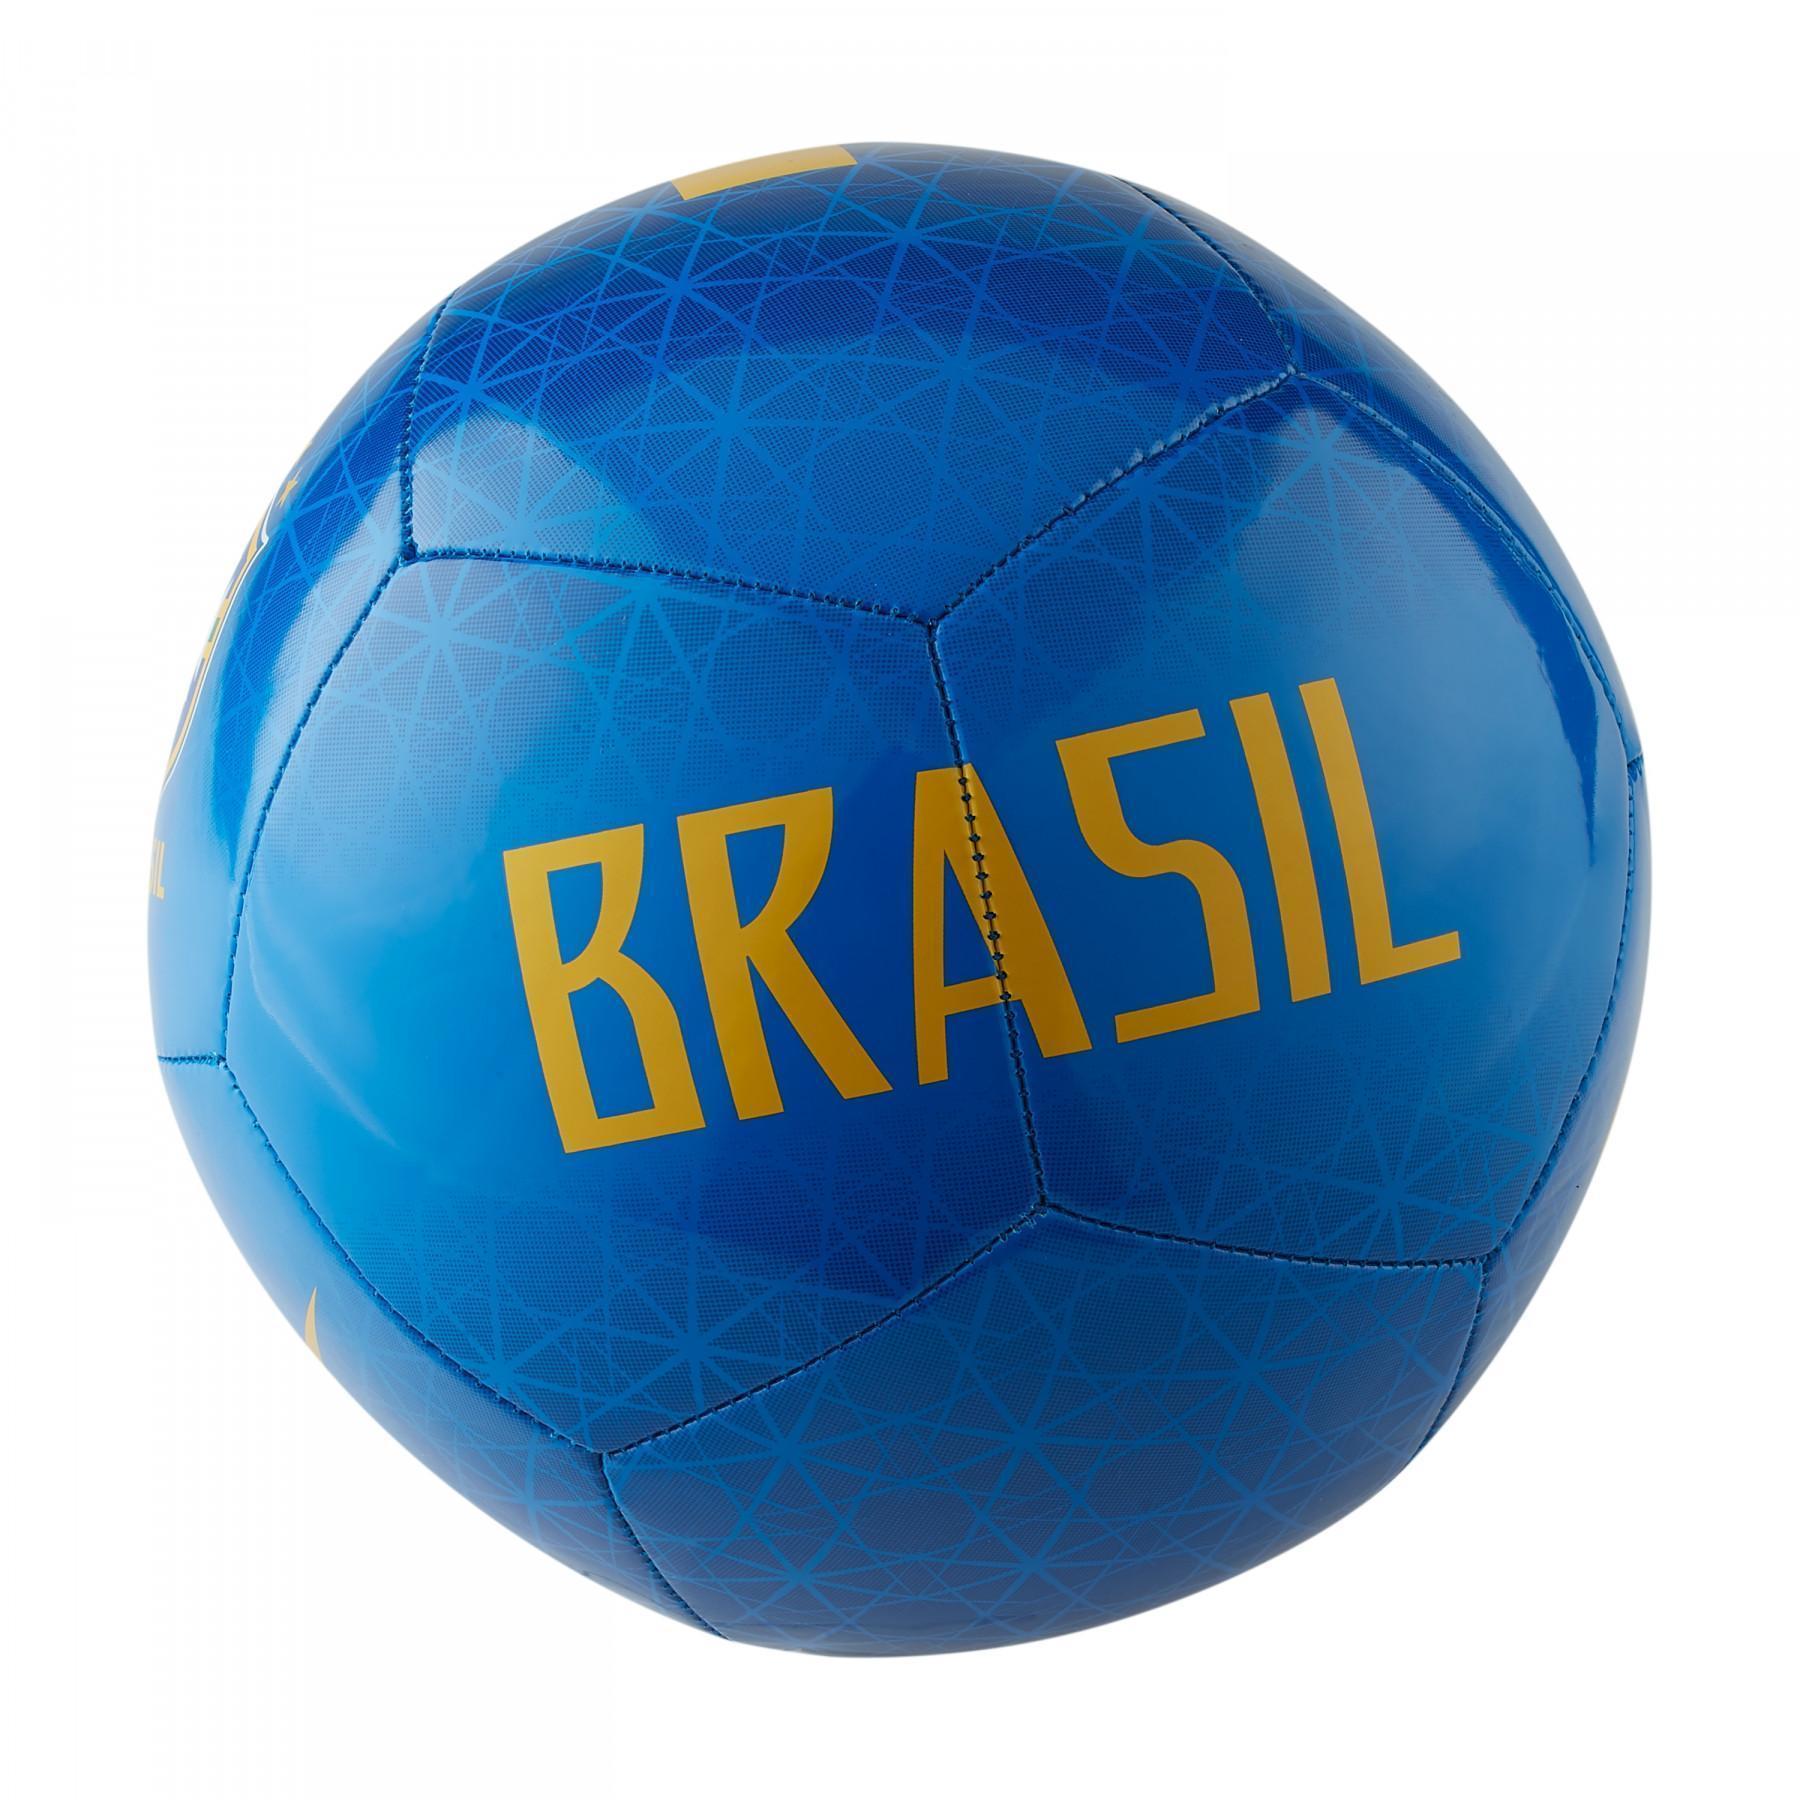 Ballon Brésil Pitch